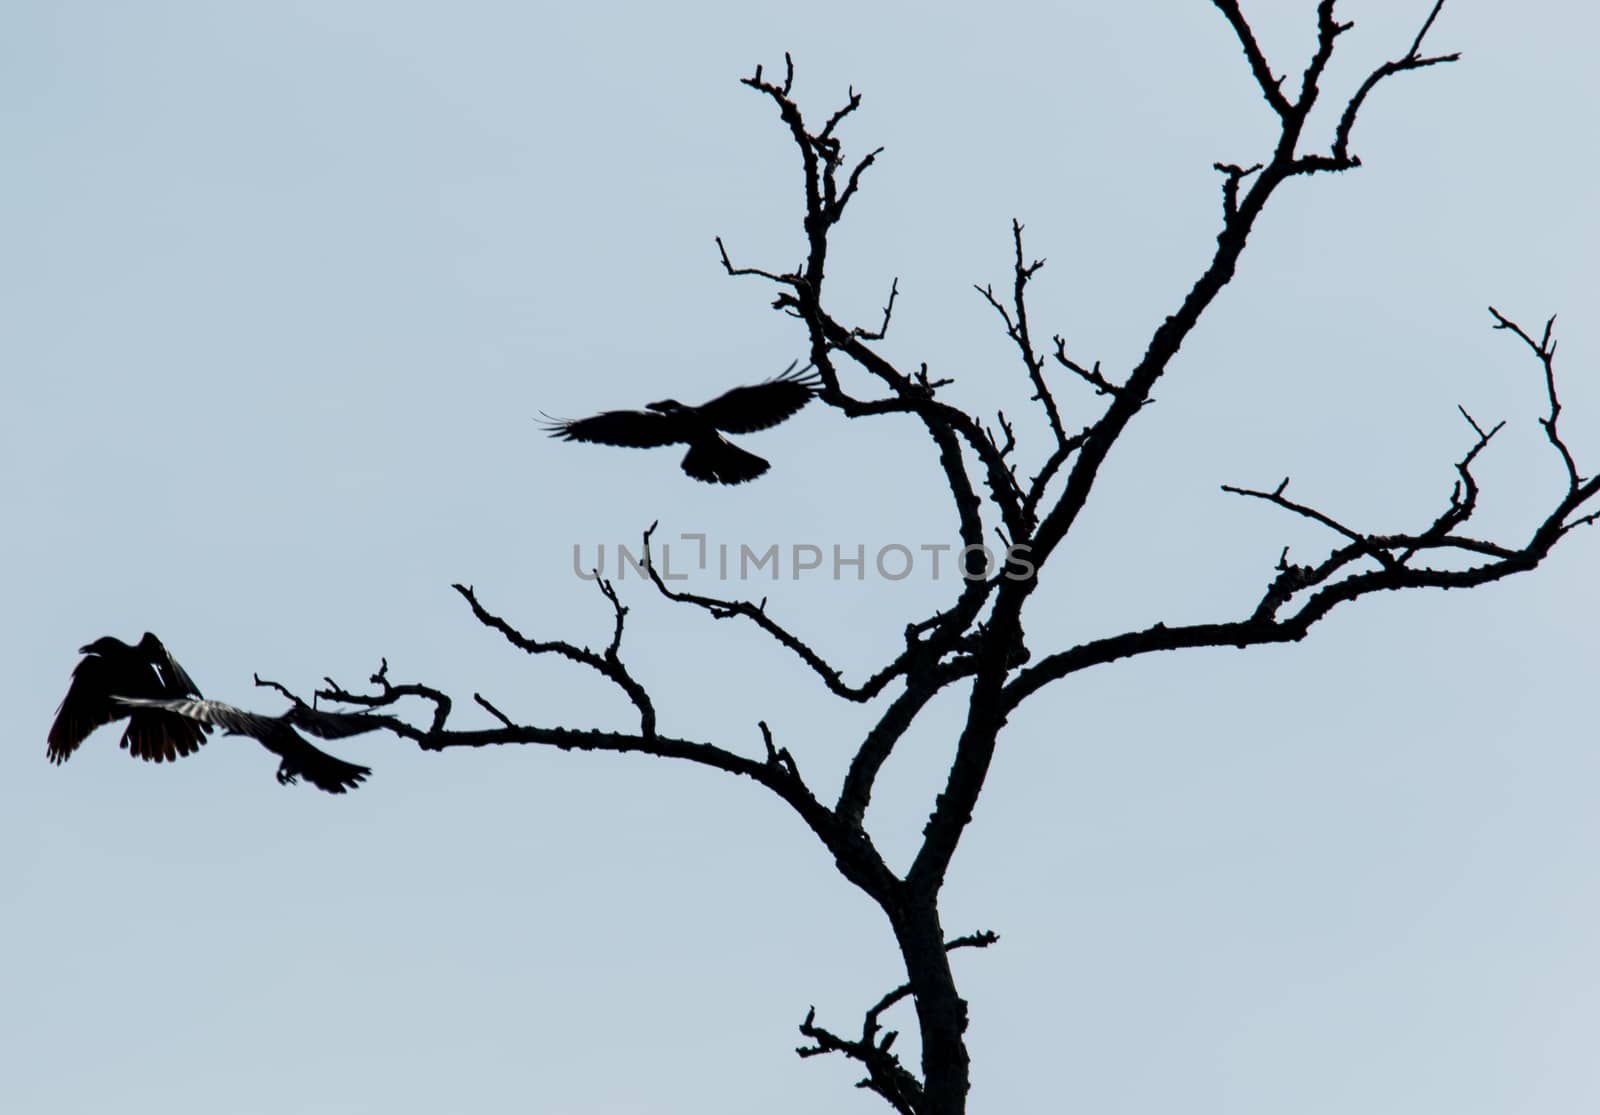 Sillhouette of crows taking flight from dead tree